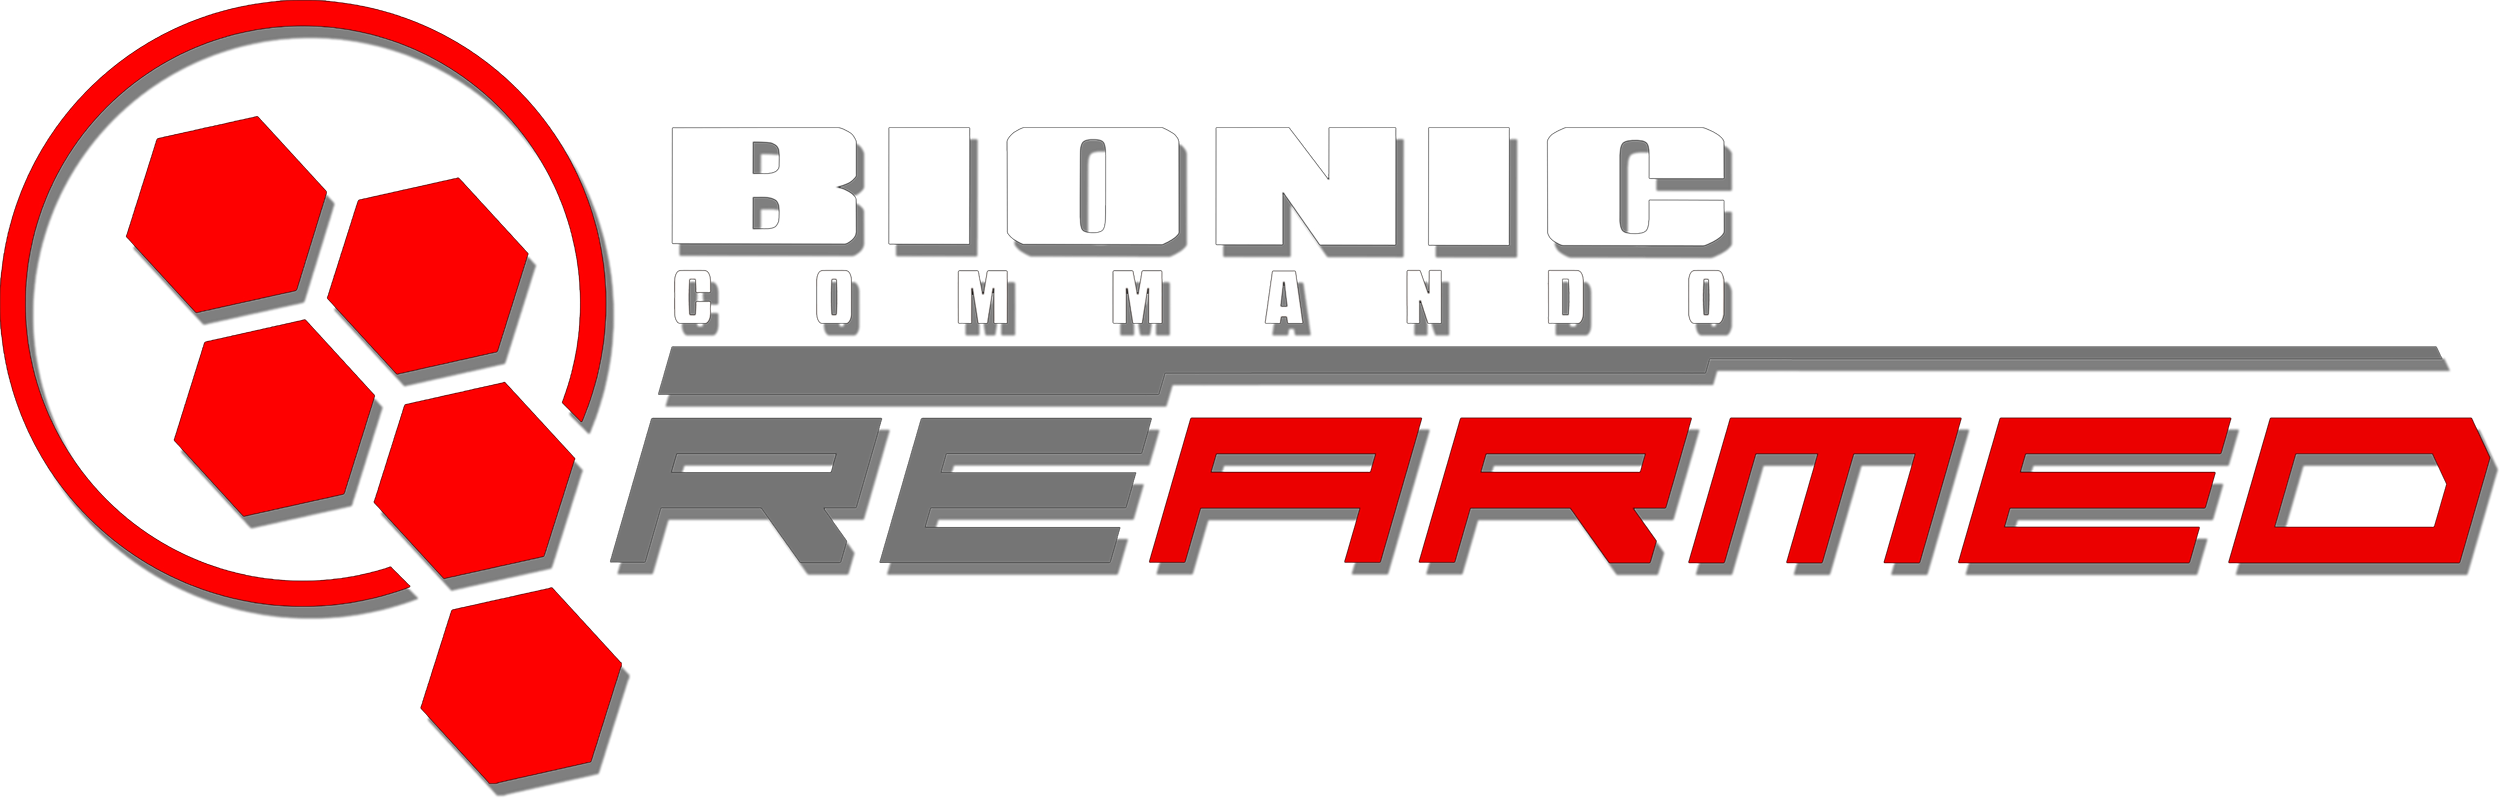 download free bionic commando rearmed